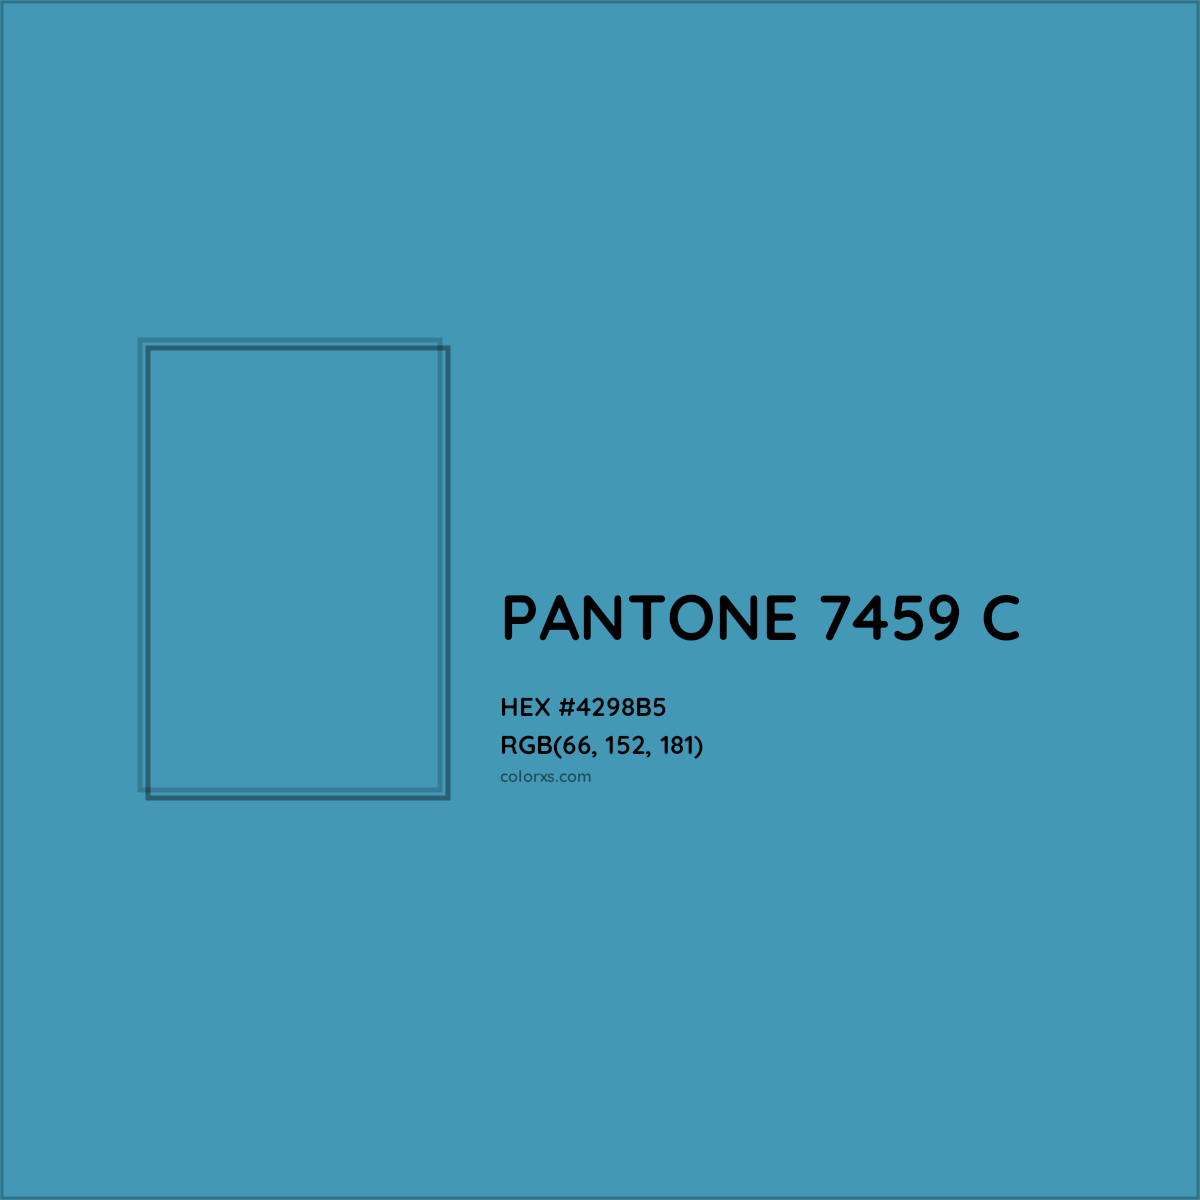 HEX #4298B5 PANTONE 7459 C CMS Pantone PMS - Color Code